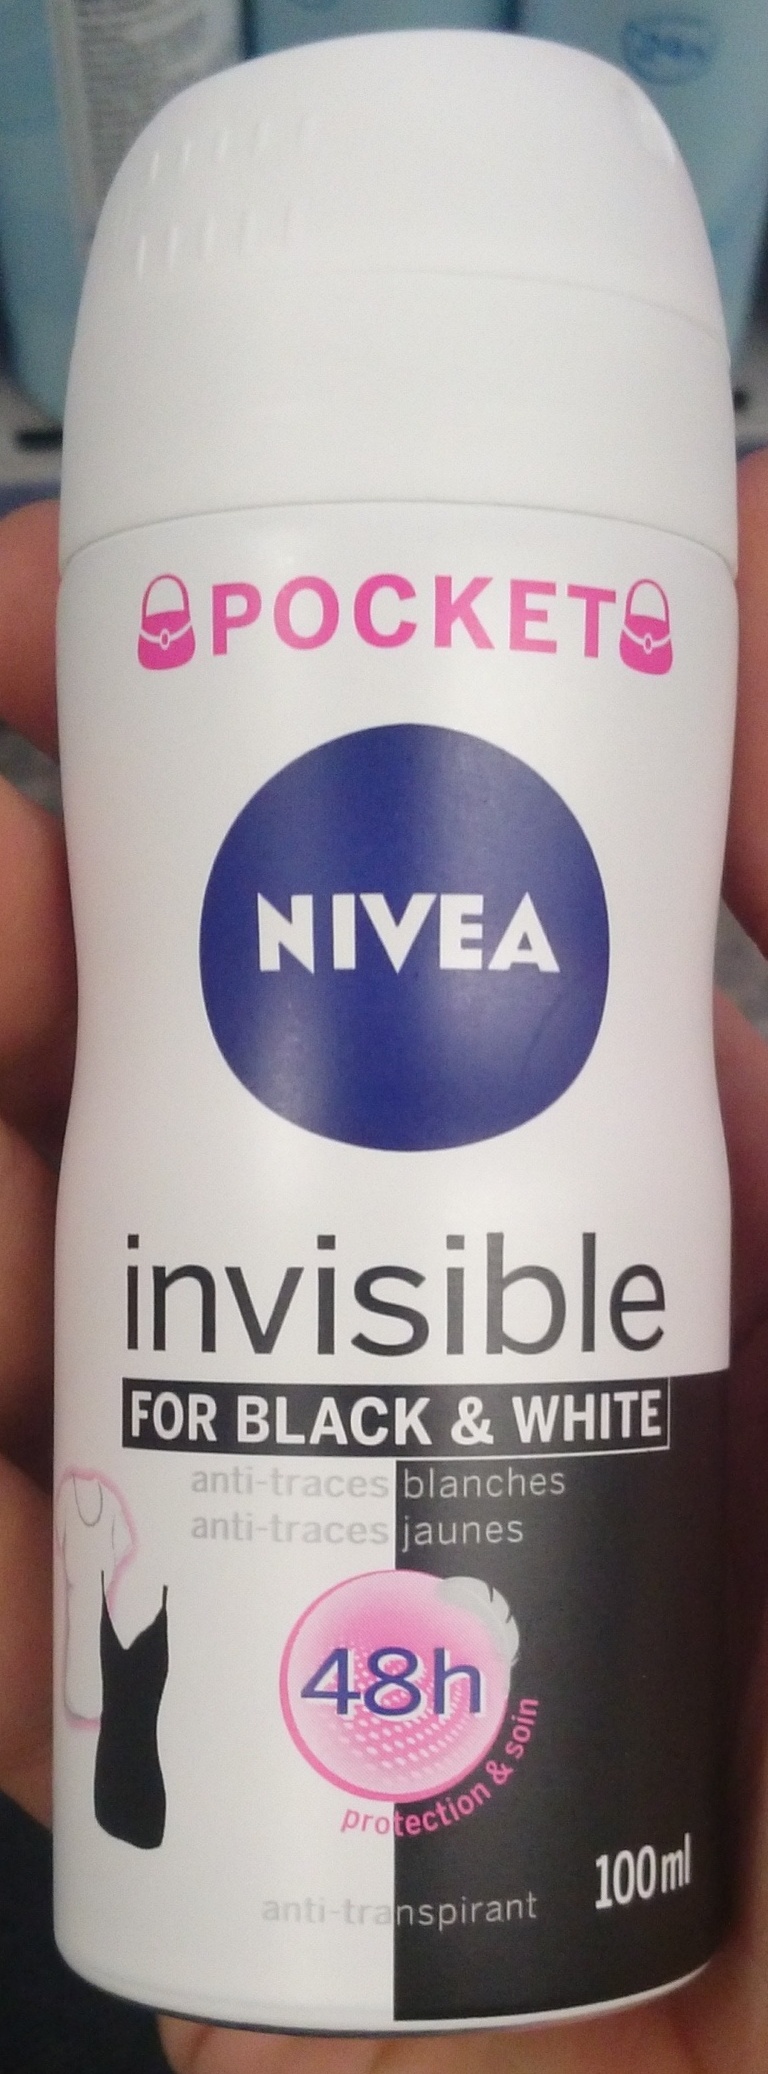 Pocket Invisible for black & white - Produit - fr